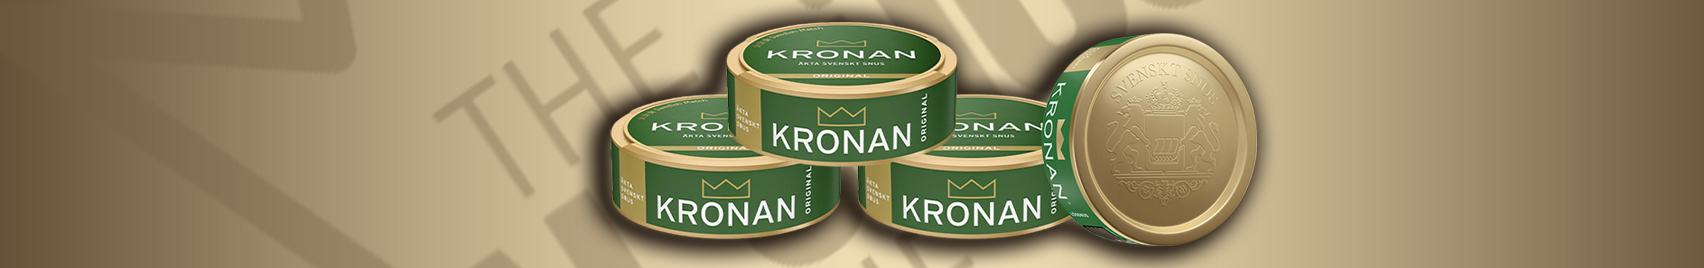 Buy KRONAN snus at The Royal Snus Online!